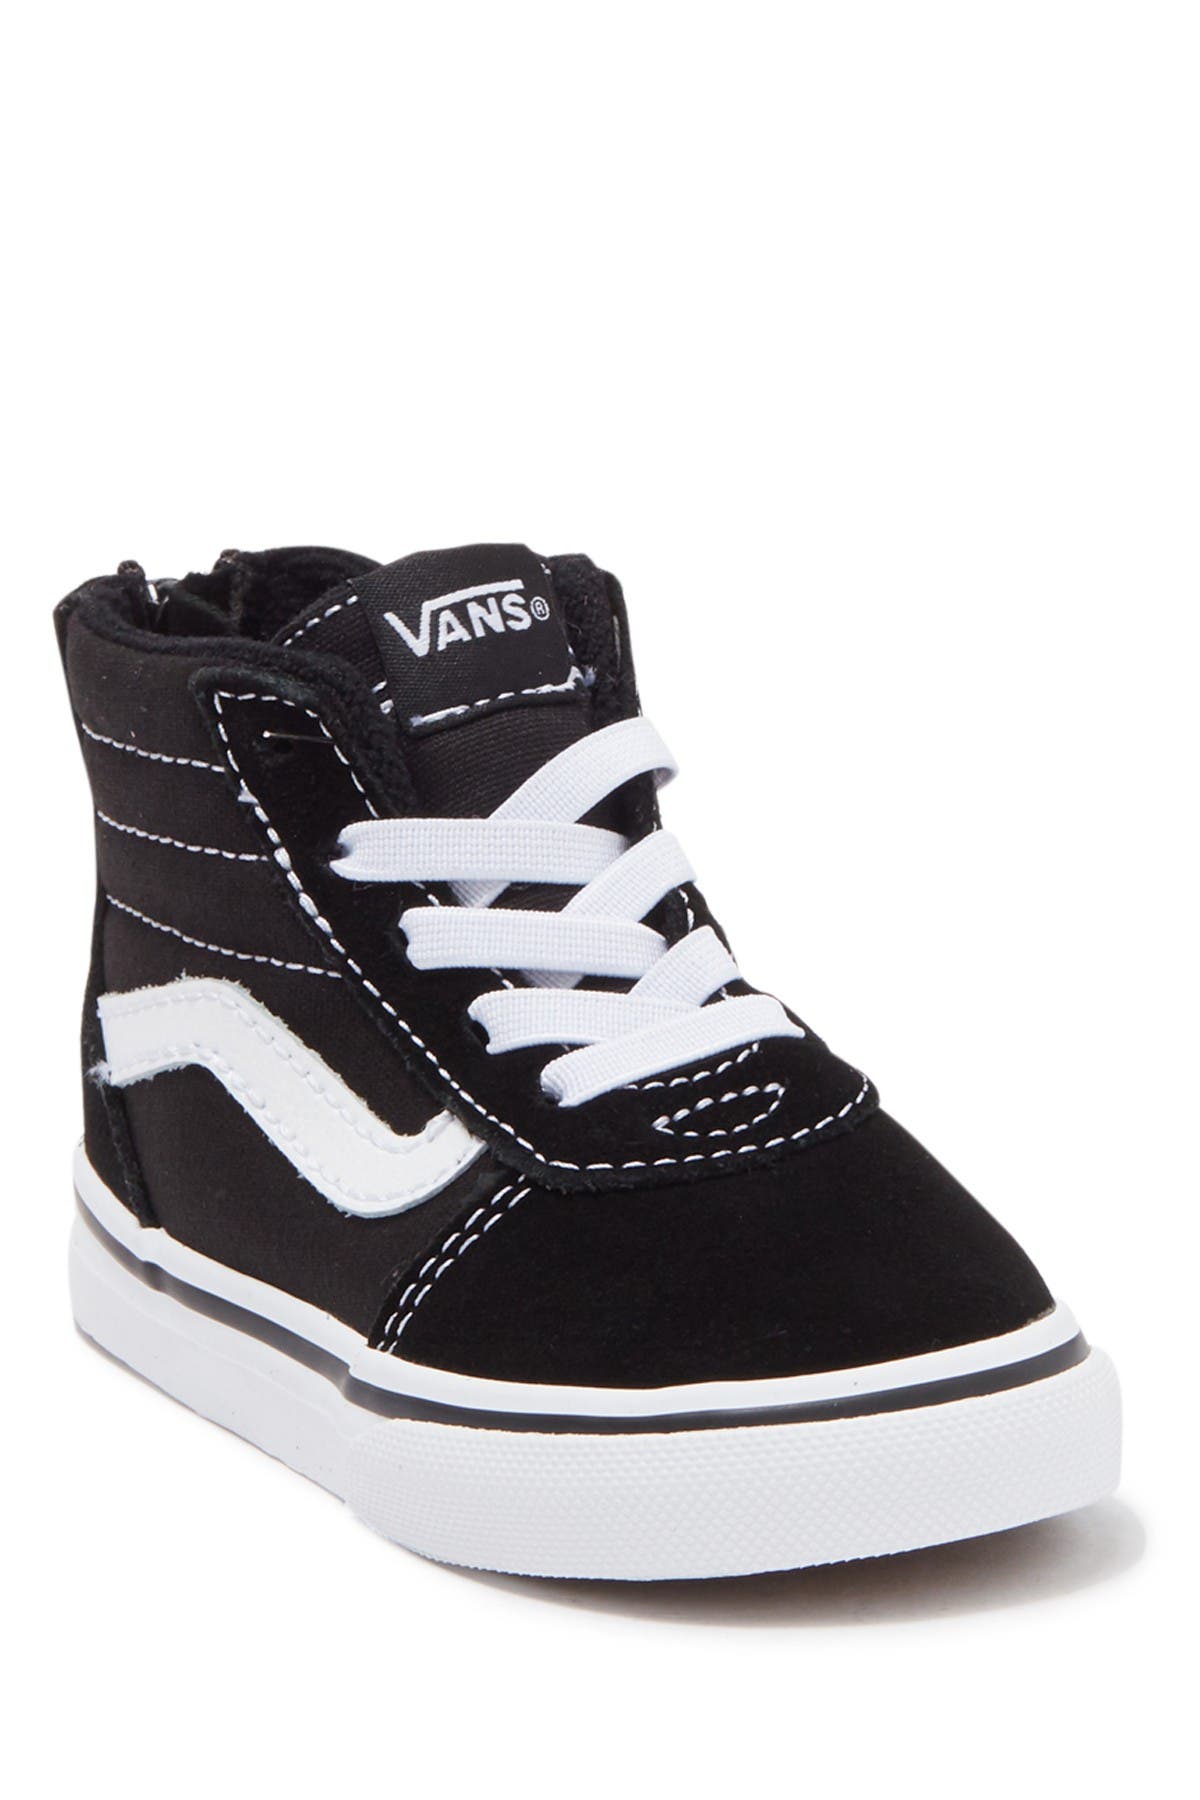 VANS | Ward Hi Zip Sneaker | Nordstrom Rack